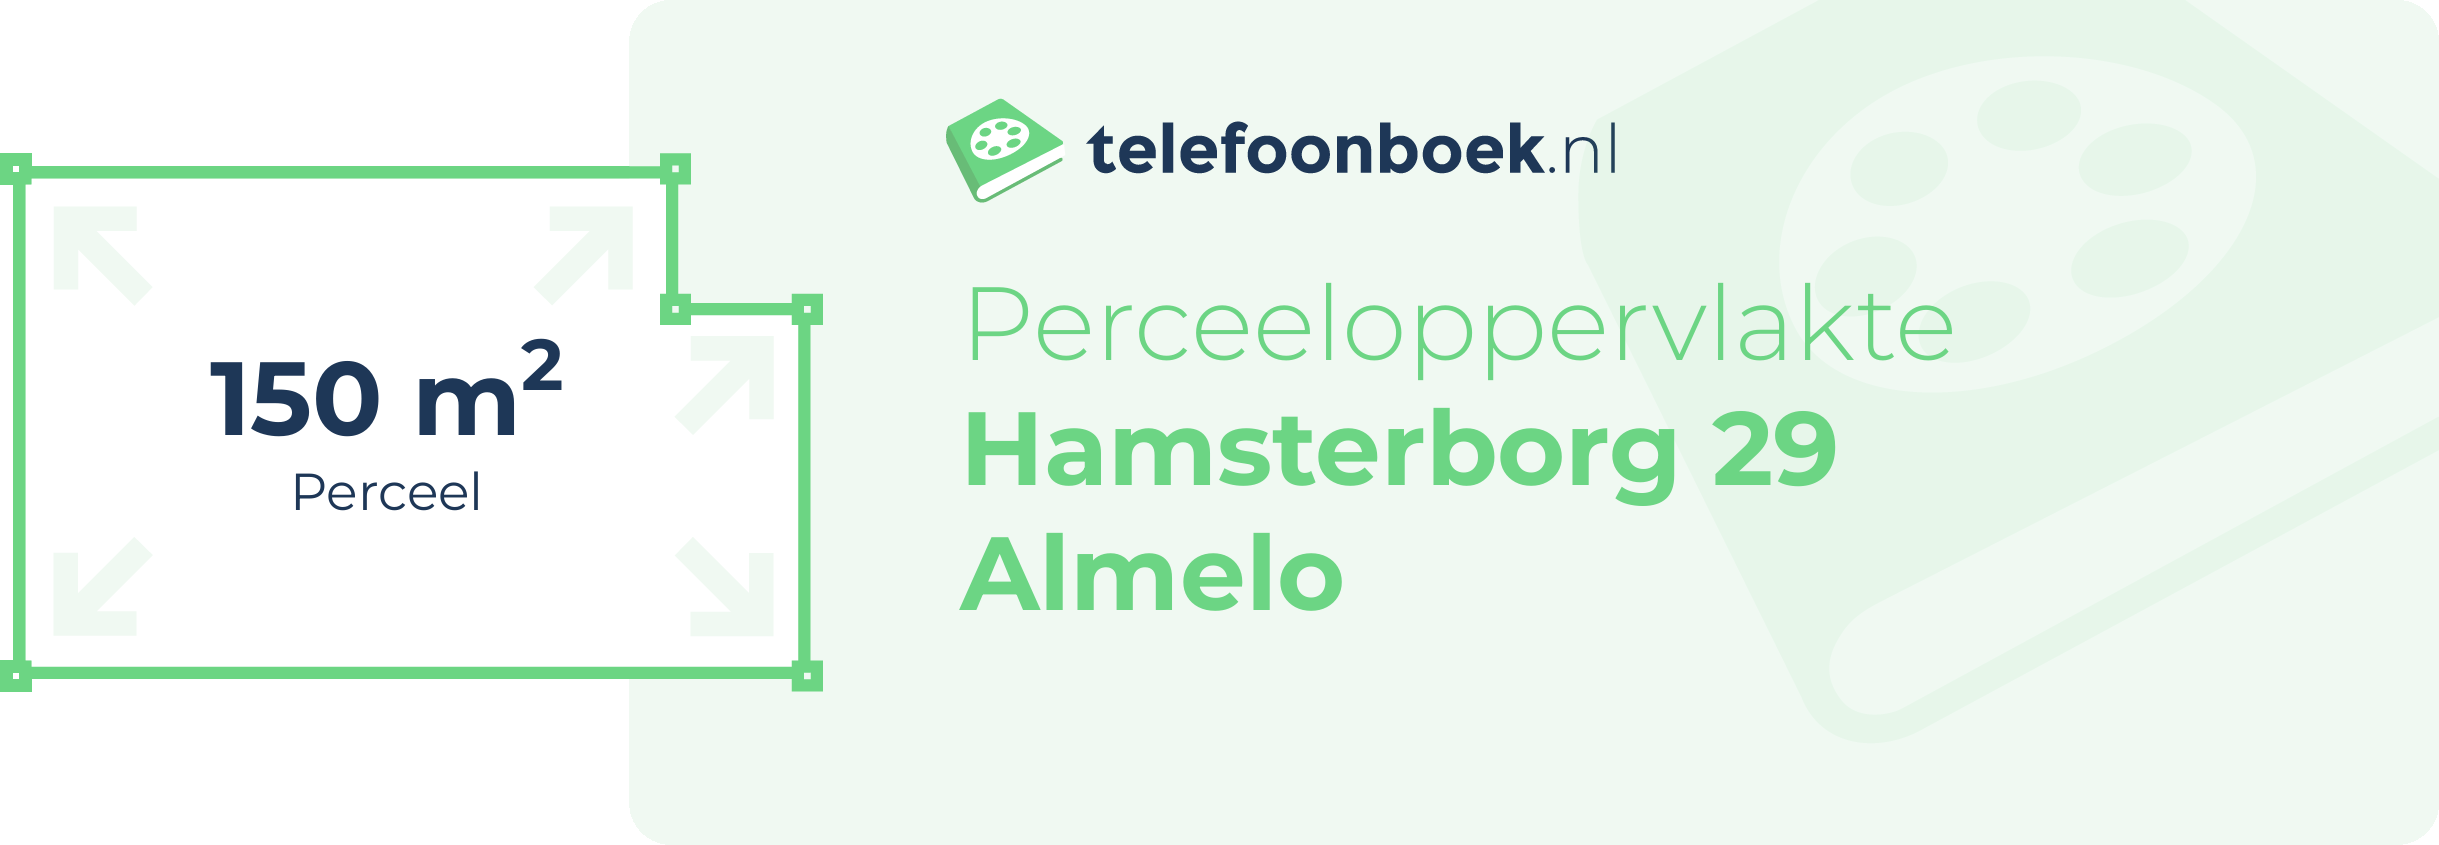 Perceeloppervlakte Hamsterborg 29 Almelo